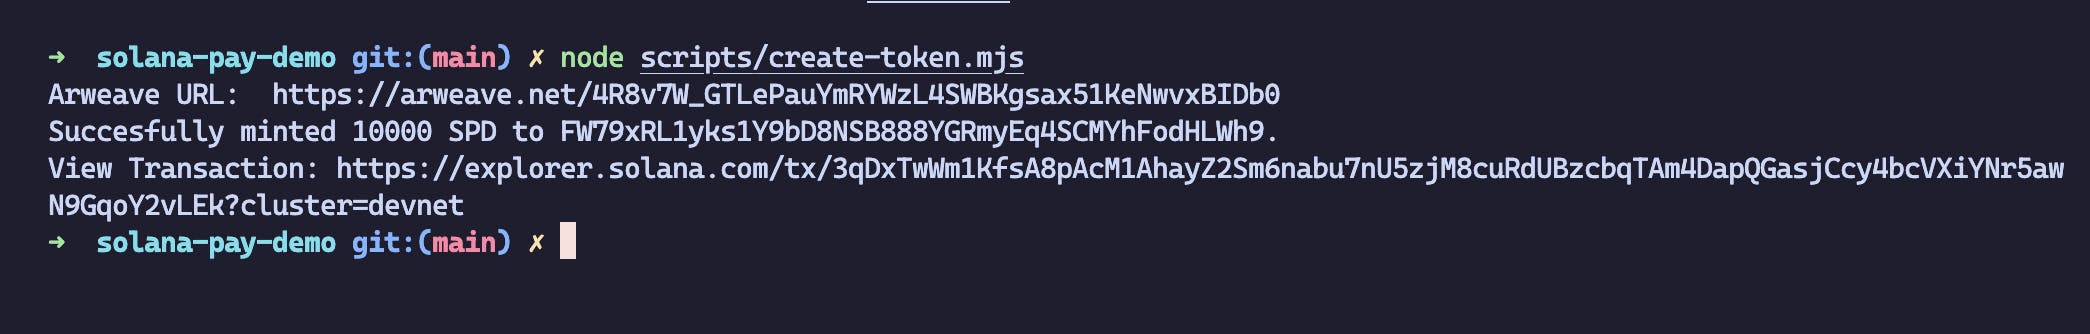 Run the create token script to create an SPL token